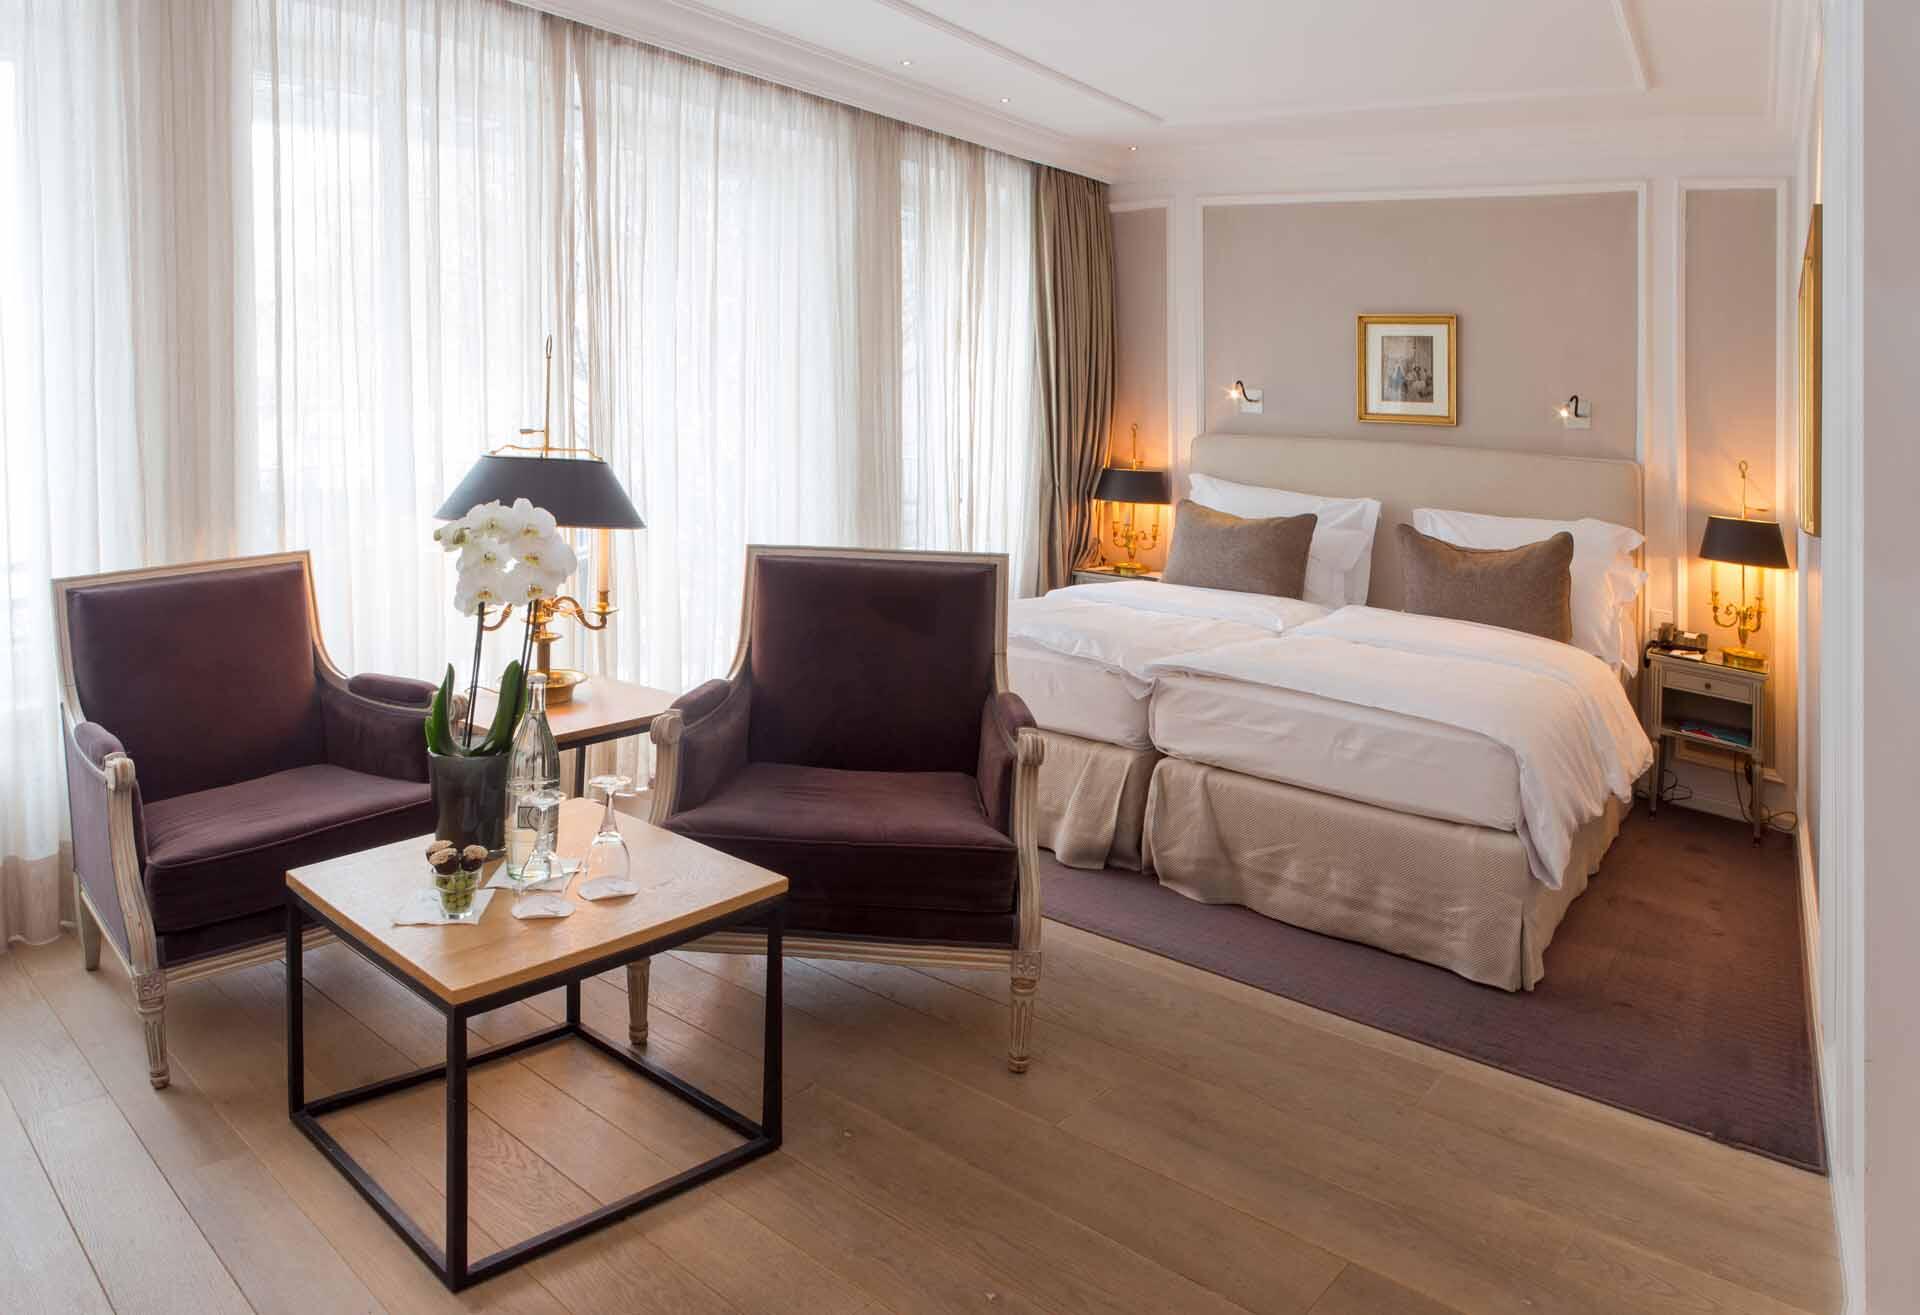 Luxury Accommodation Munich | Hotel München Palace